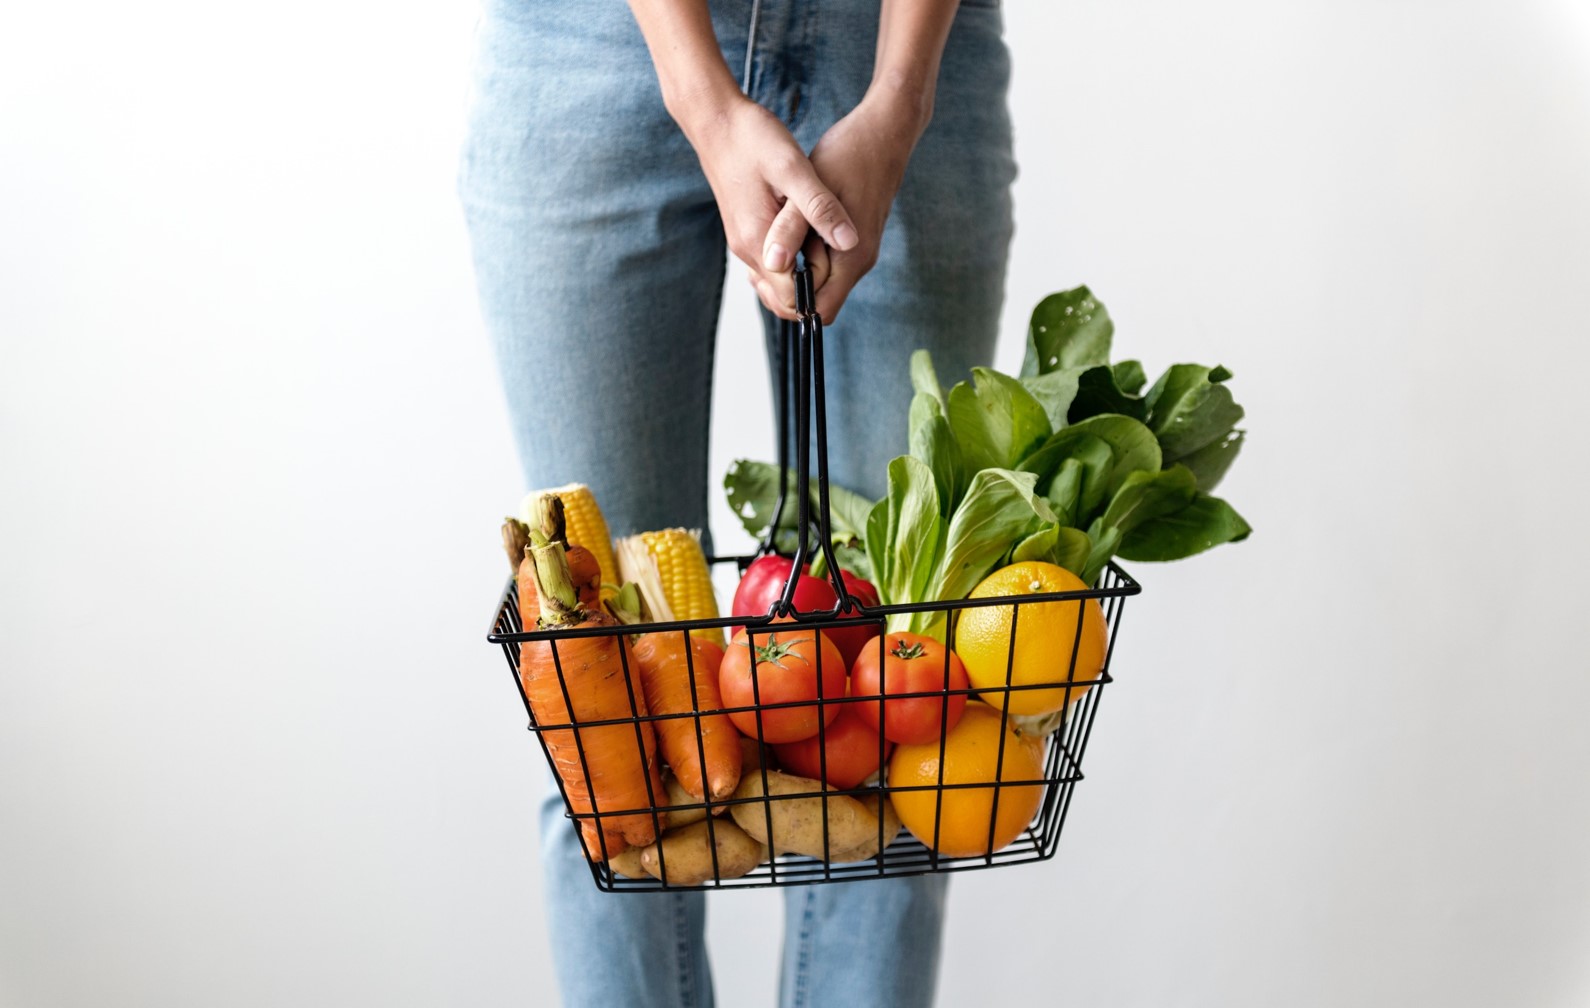 Widok od pasa w dół na kobietę w jeansach trzymającą oburącz ażurowy koszyk zakupowy wypełniony owocami i warzywami